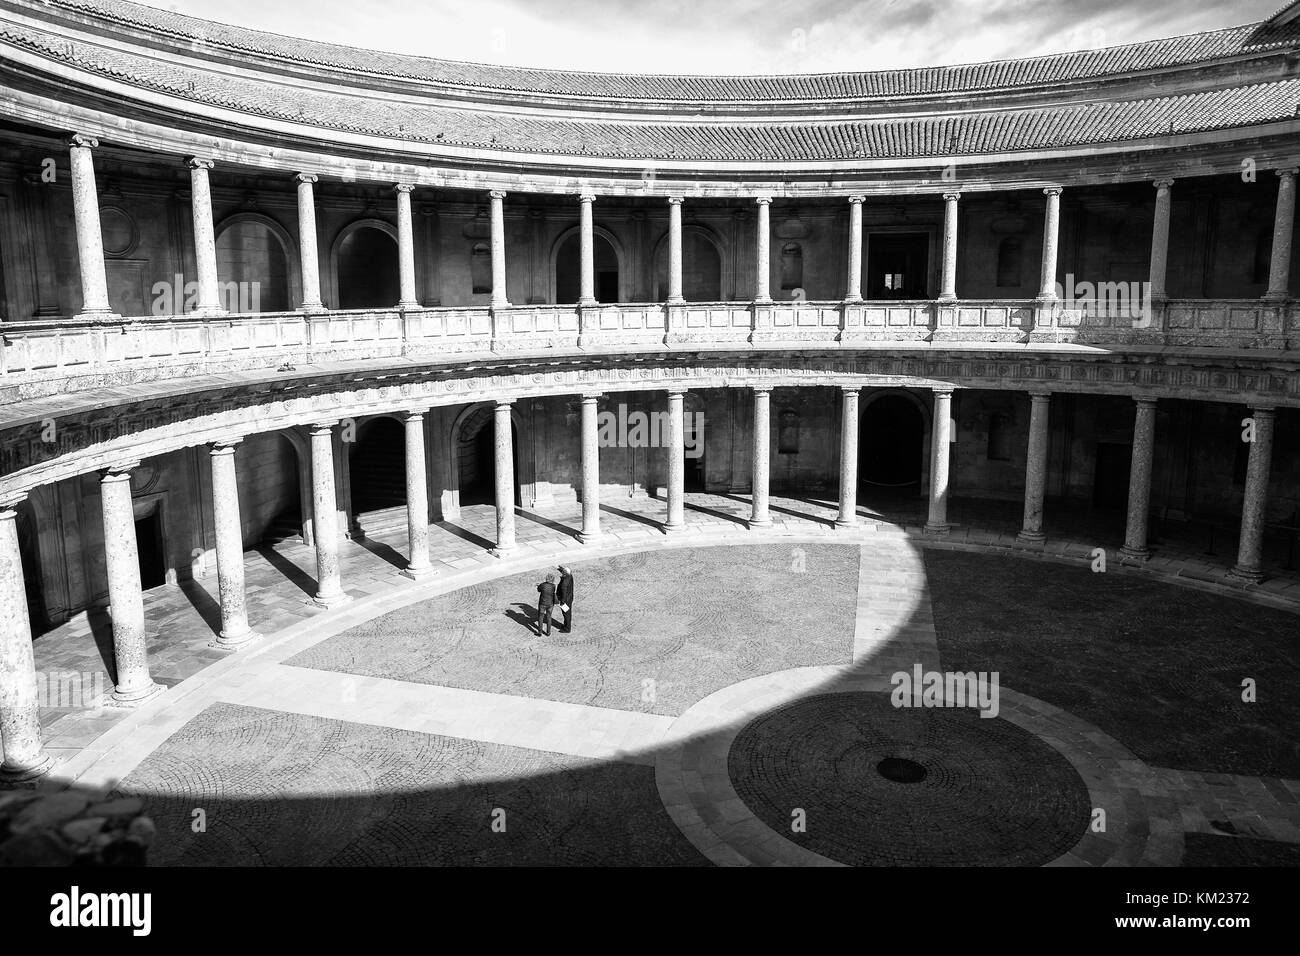 La cour intérieure circulaire du Palacio de Carlos V (Palais Charles V) dans le complexe de l'Alhambra, Grenade, Andalousie, Espagne Banque D'Images